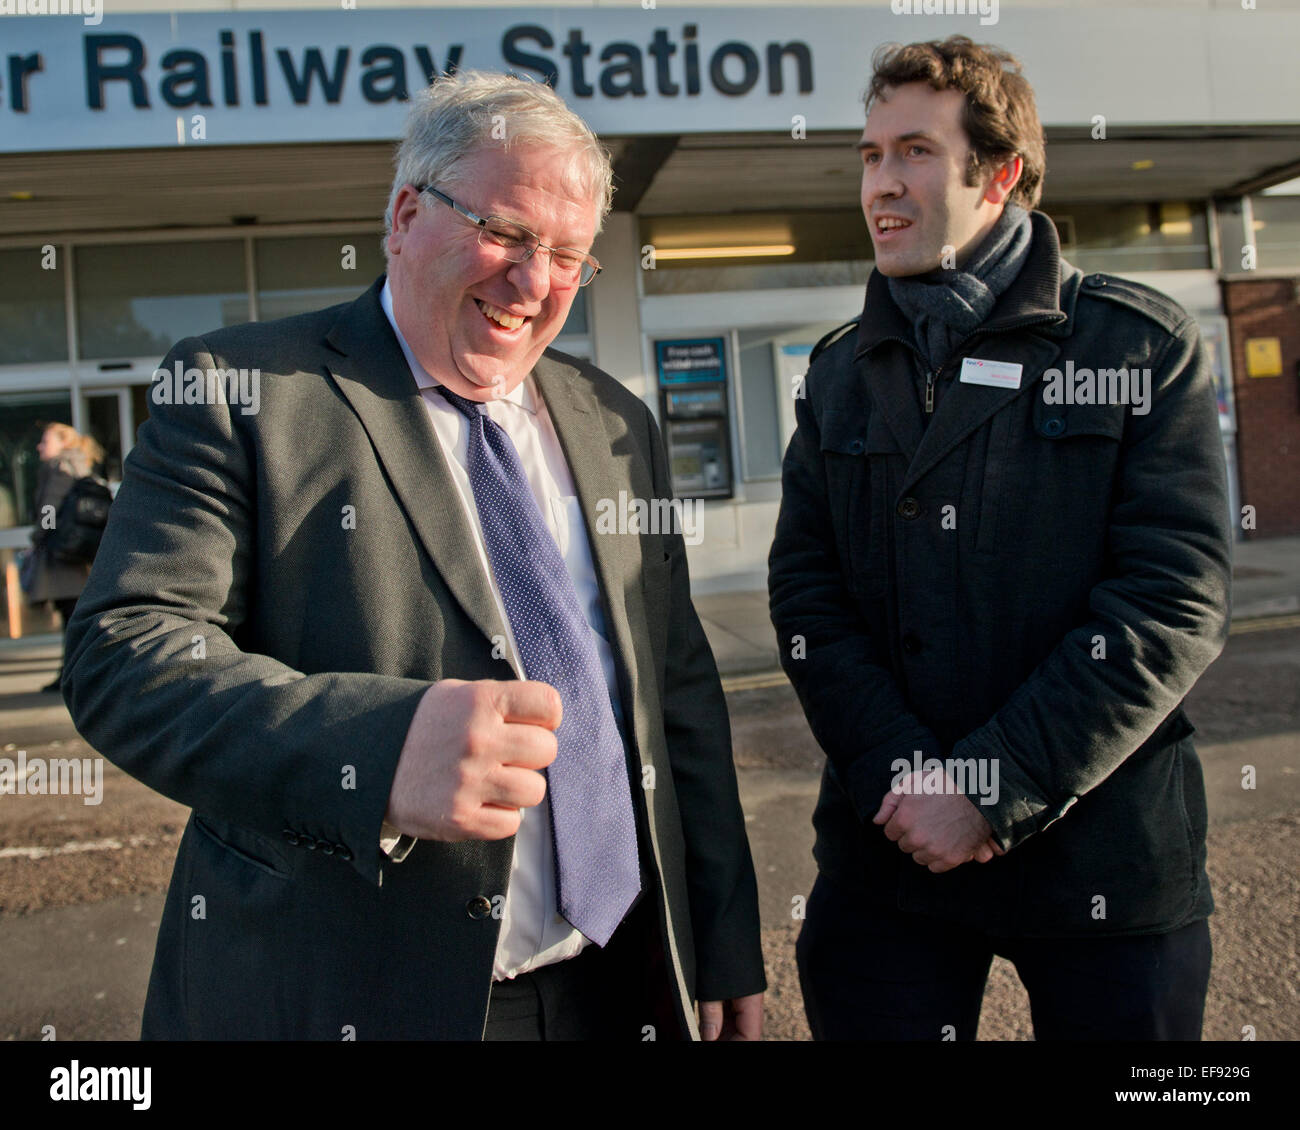 Gloucester, Royaume-Uni. 29 janvier, 2015. Ministre des Transports Patrick McLoughlin fait une visite ministérielle à la gare de Gloucester. Crédit : charlie bryan/Alamy Live News Banque D'Images